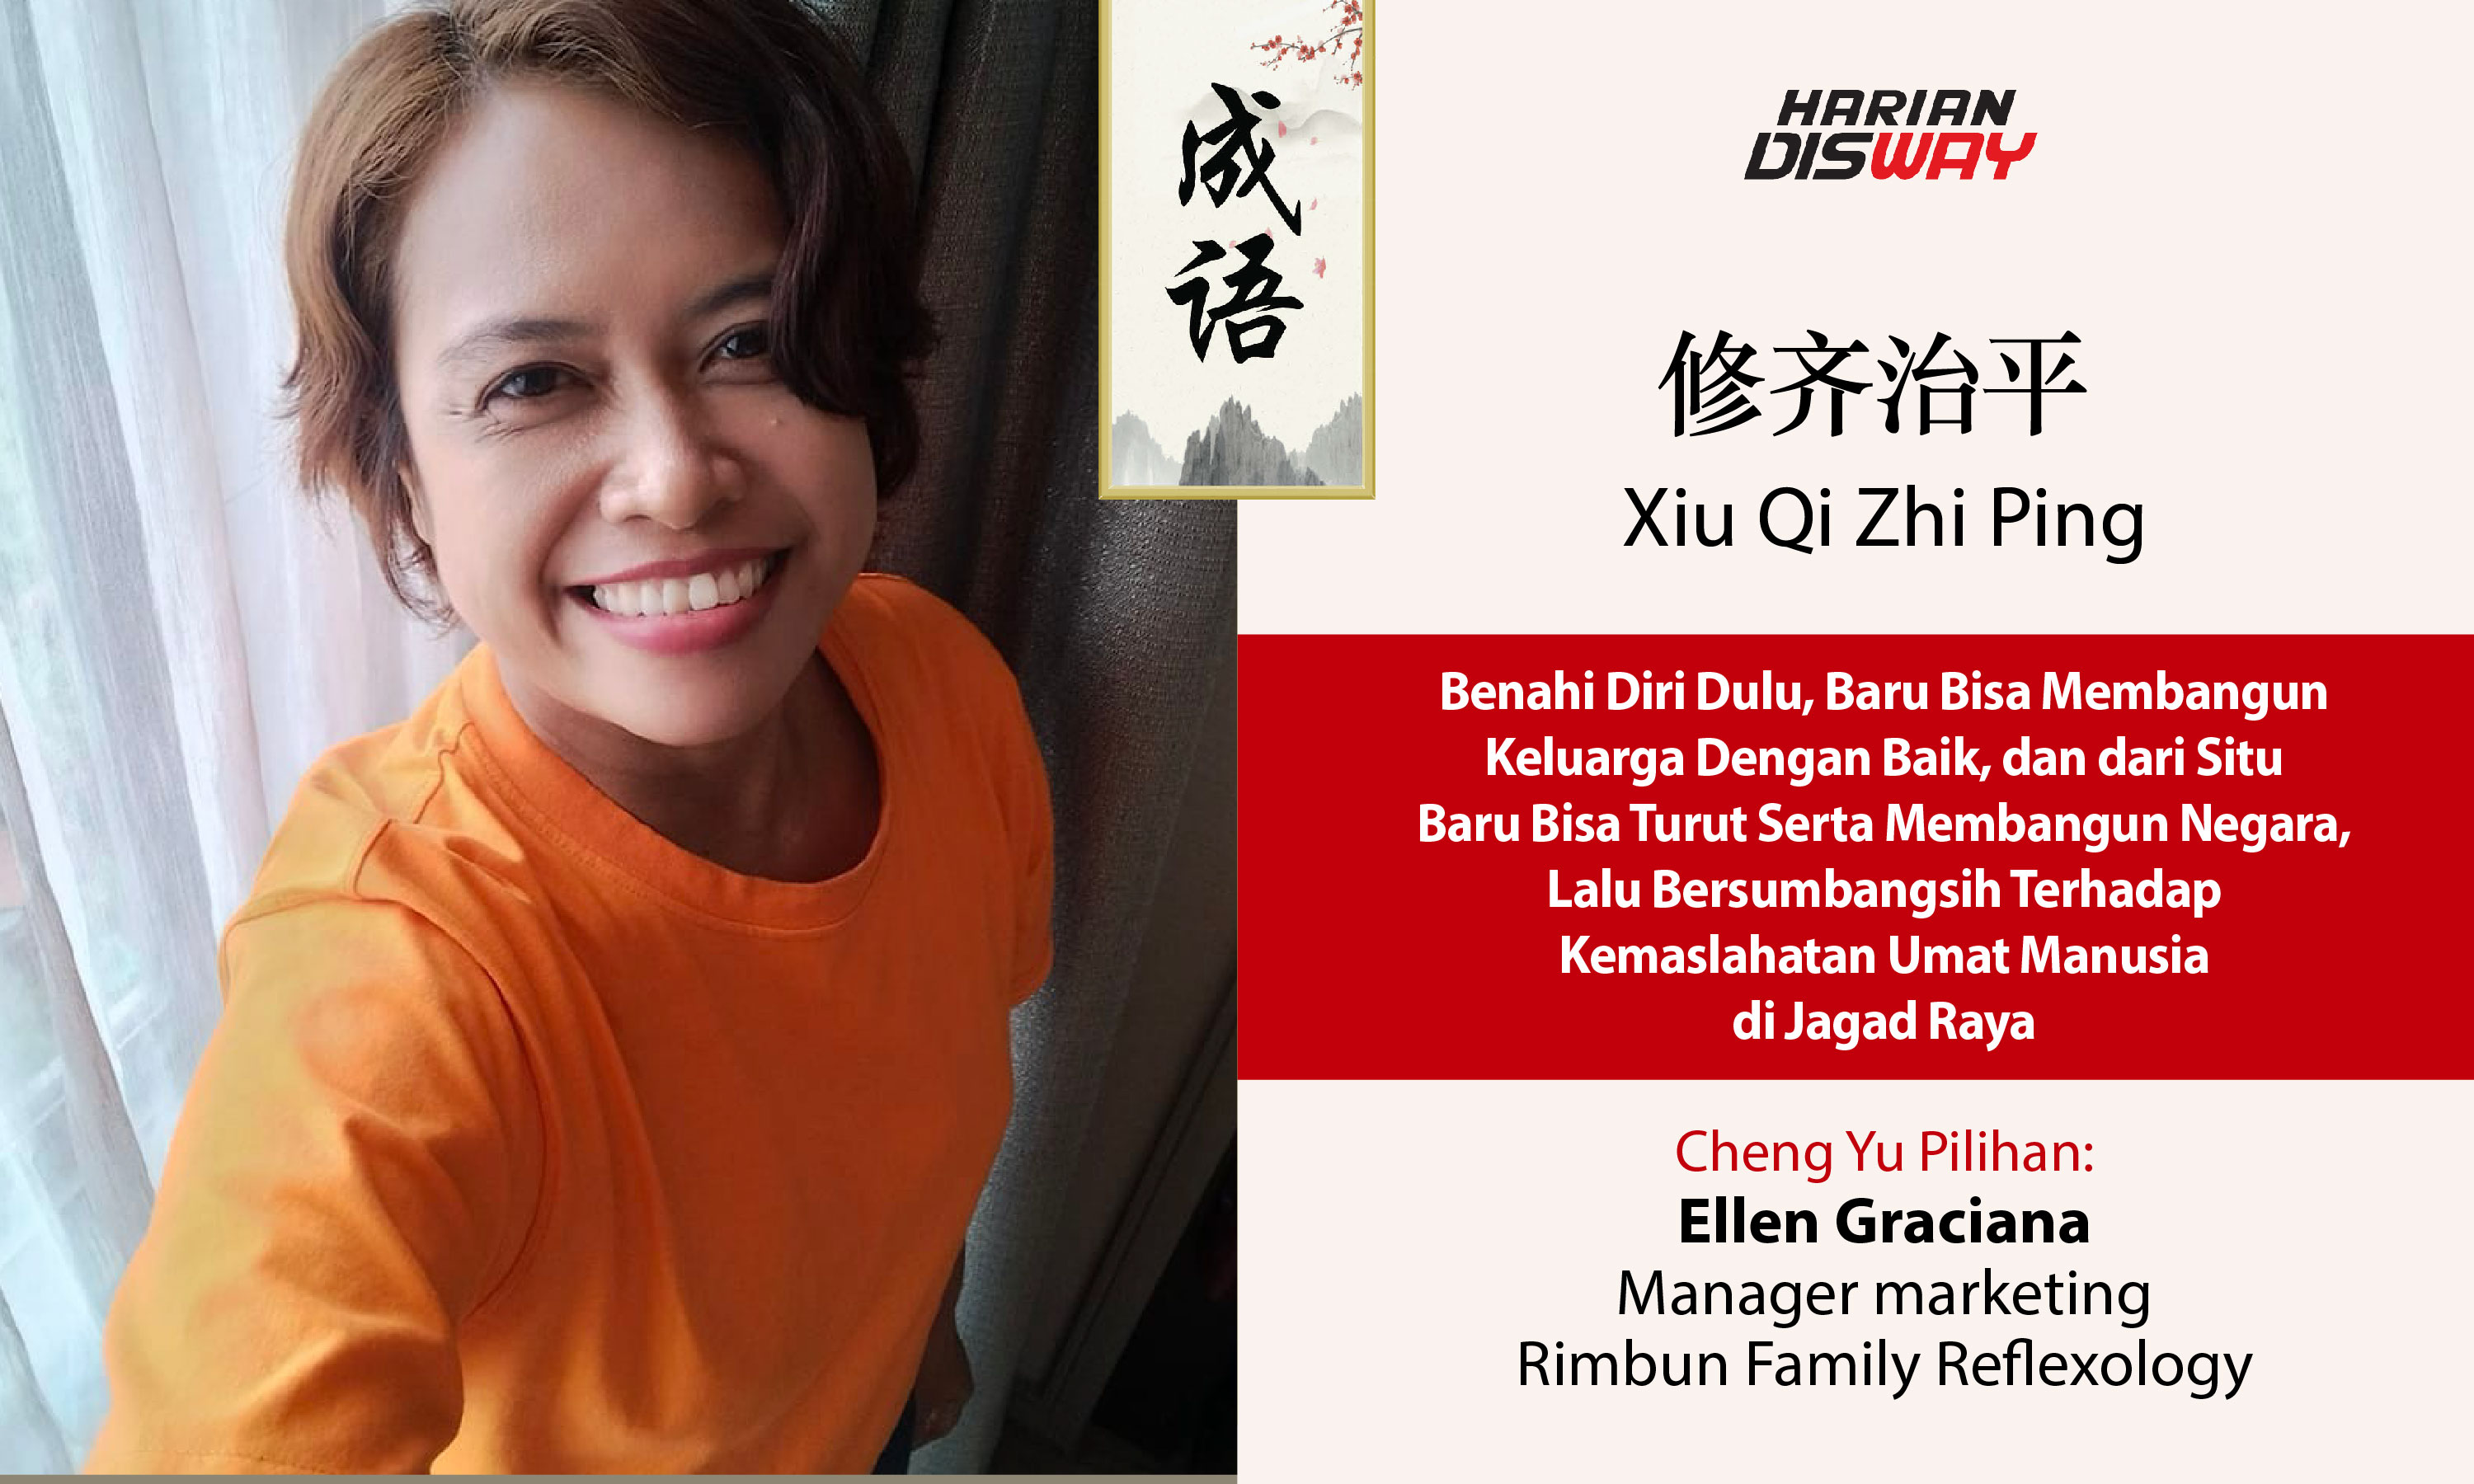 Cheng Yu Pilihan Manager Marketing Rimbun Family Reflexology Ellen Graciana: Xiu Qi Zhi Ping